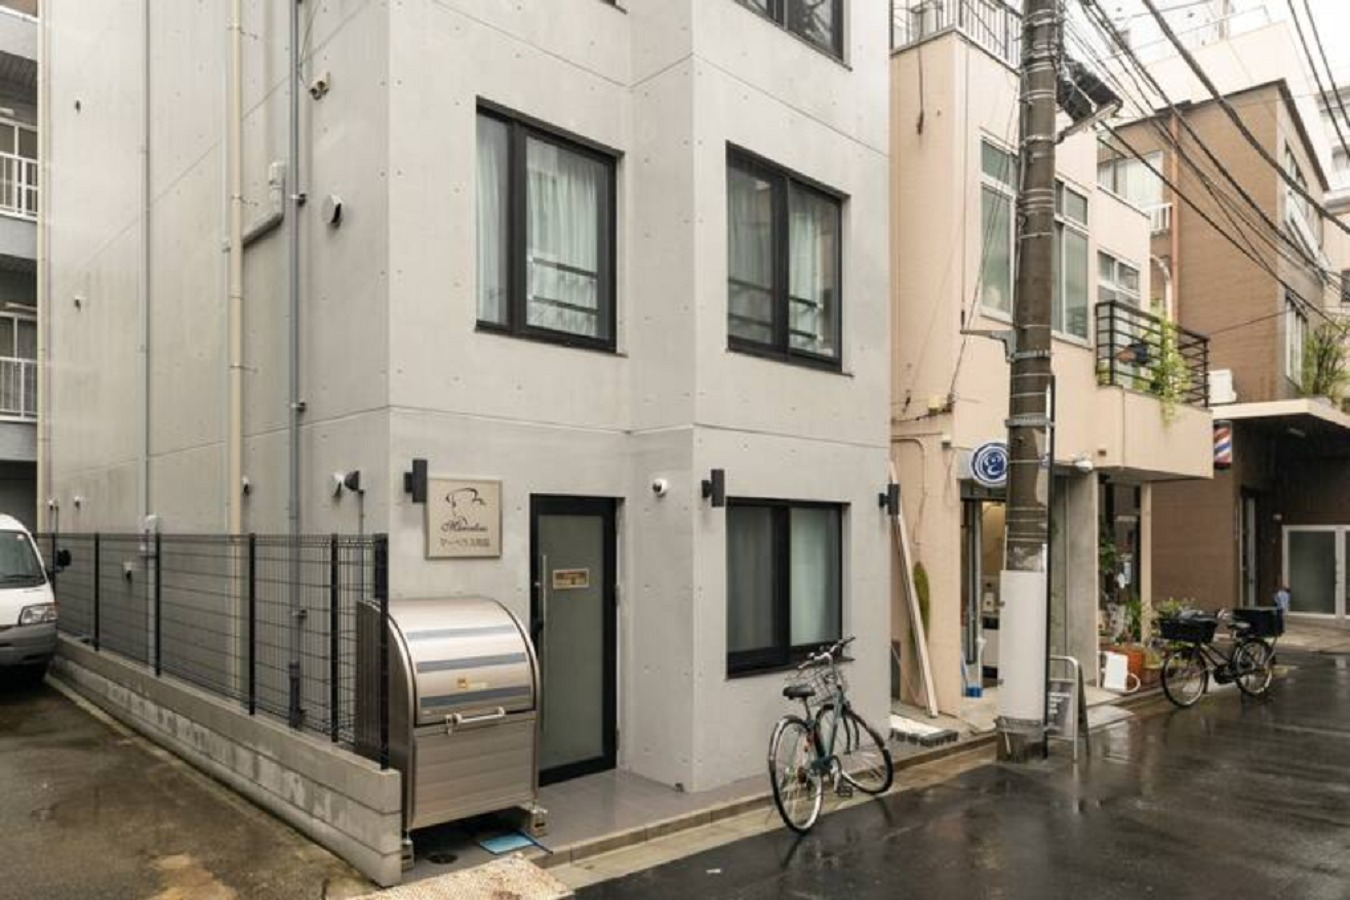 New apartment 両国駅 徒歩6分 新築マンション#302 高速WI-FI  浅草近